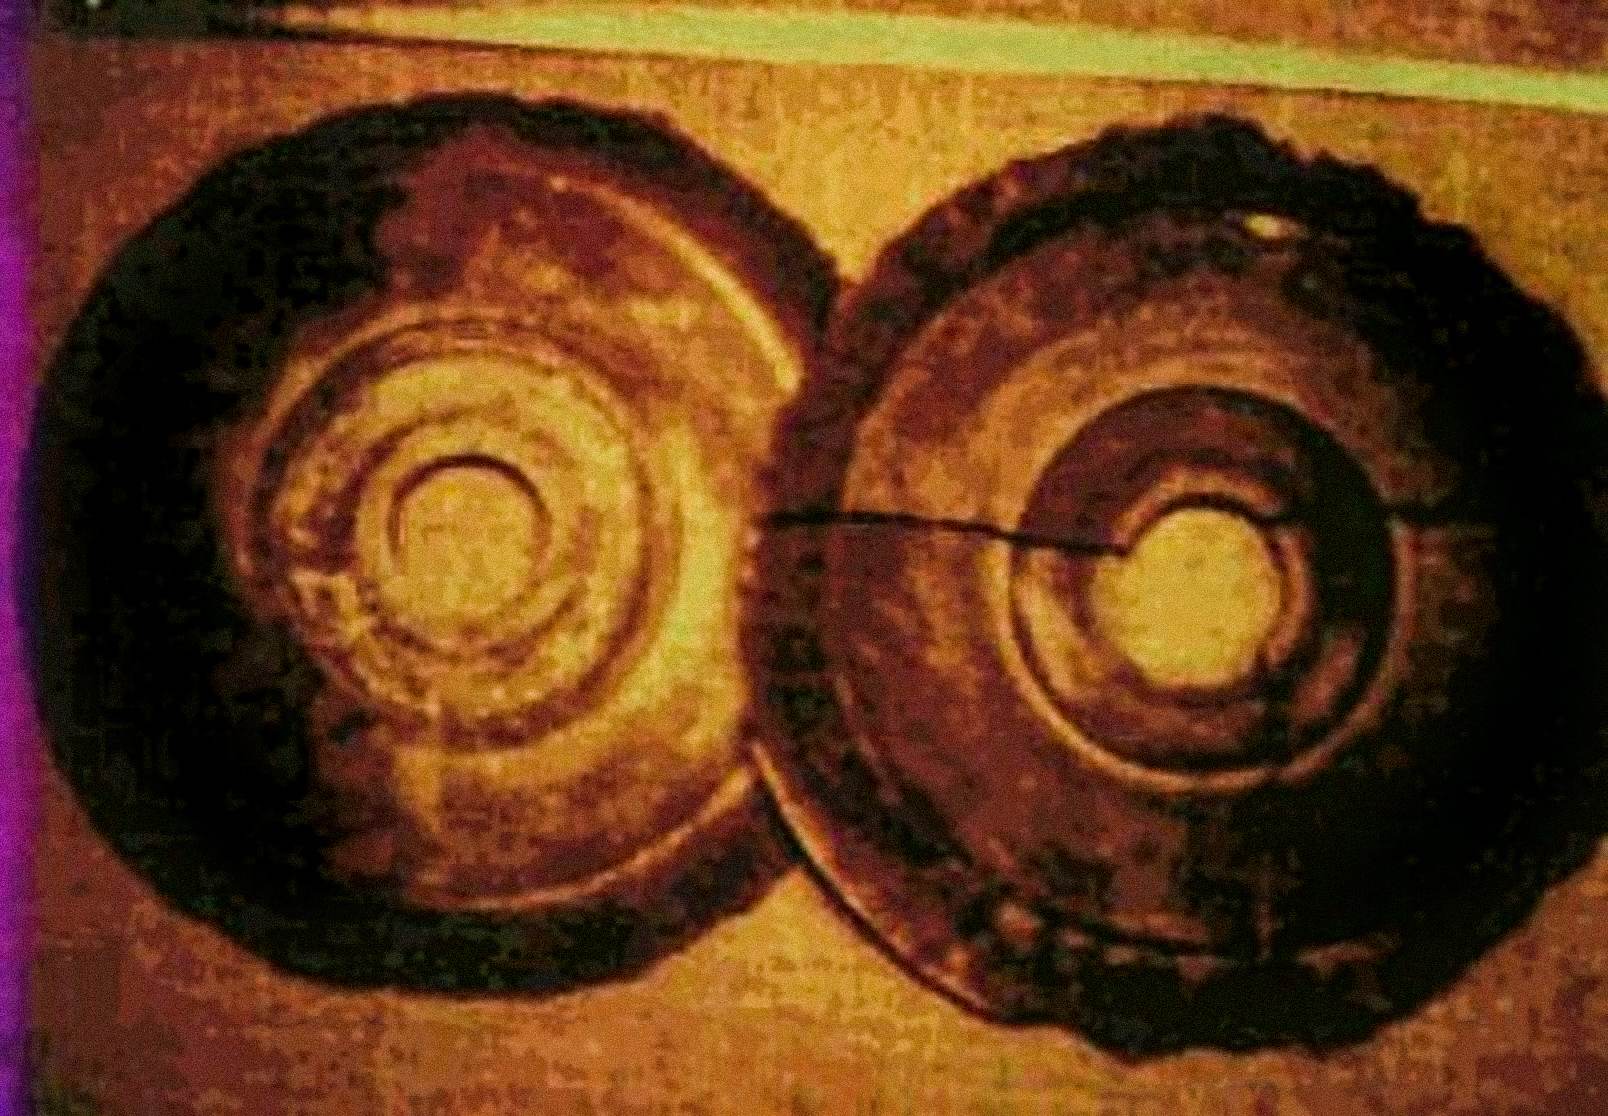 Nel 1974, Ernst Wegerer, un ingegnere austriaco, fotografò due dischi che rispondevano alle descrizioni dei Dropa Stones. Era in una visita guidata del Museo Banpo a Xian, quando vide i dischi di pietra in mostra. Afferma di aver visto un buco al centro di ogni disco e geroglifici in scanalature a spirale parzialmente sbriciolate.